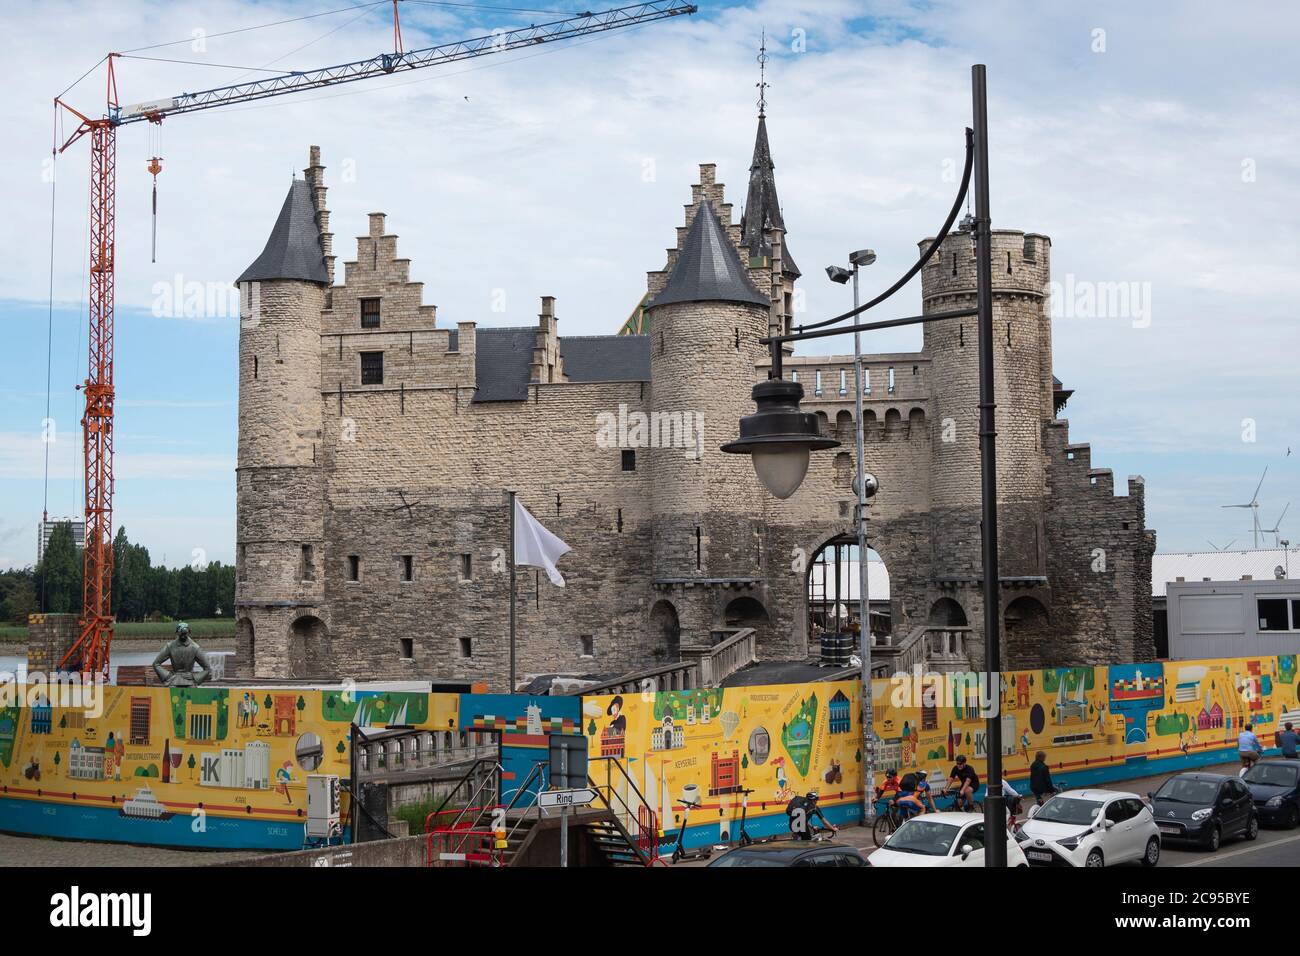 Anvers, Belgique, 19 juillet 2020, gros plan des clôtures et du château Het Steen avec grue et touristes Banque D'Images